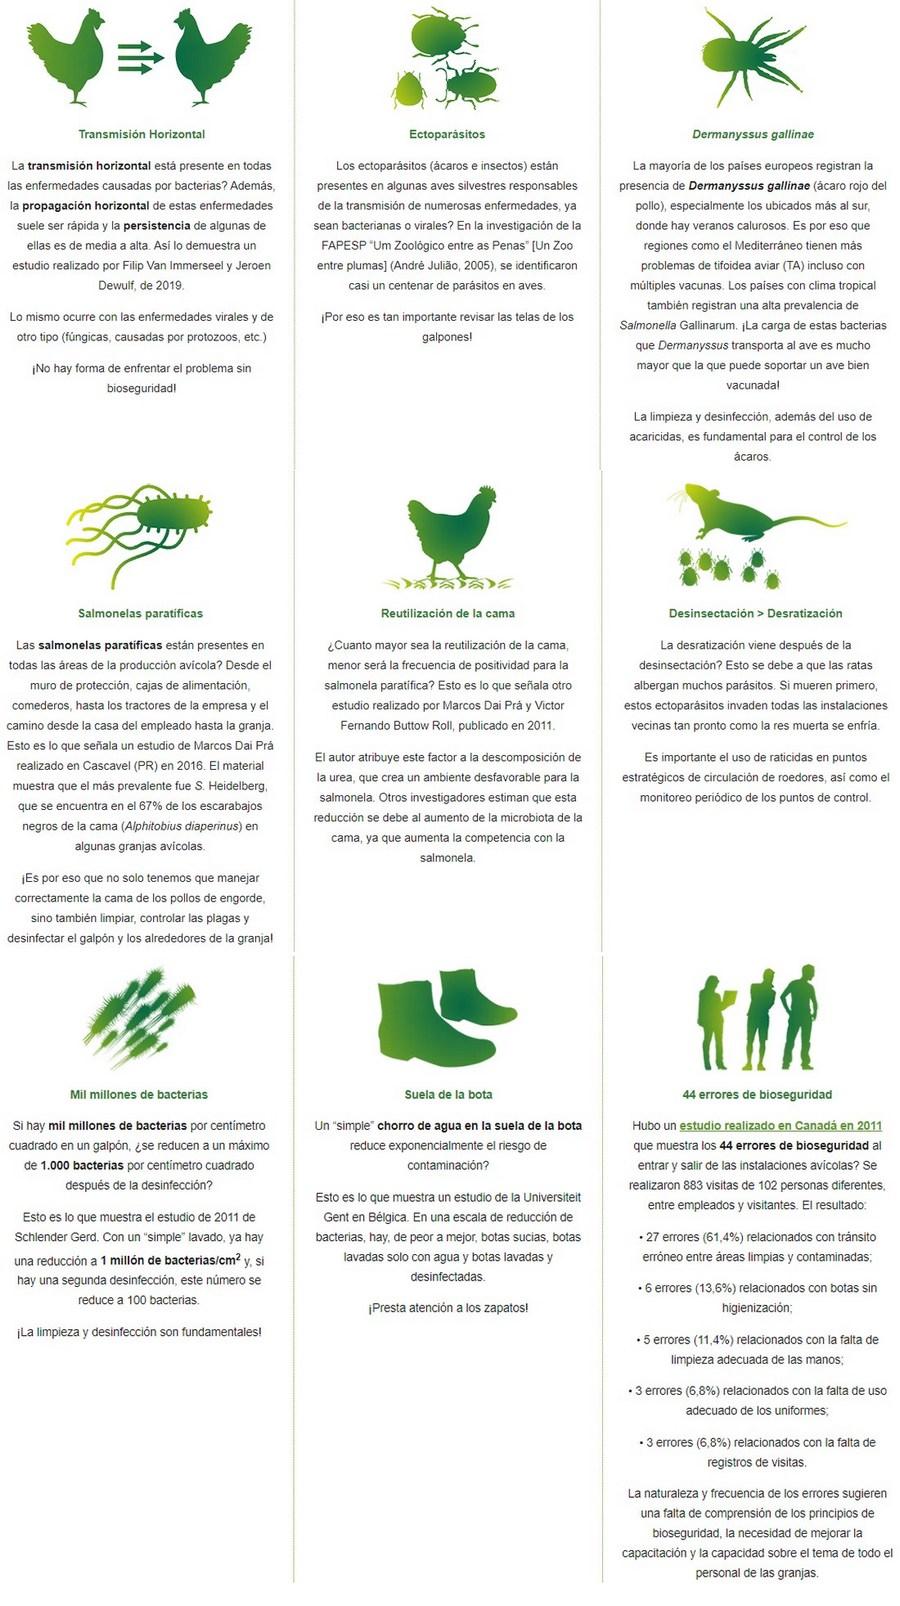 Bioseguridad: relevancia en la producción de pollos de engorde - Image 1